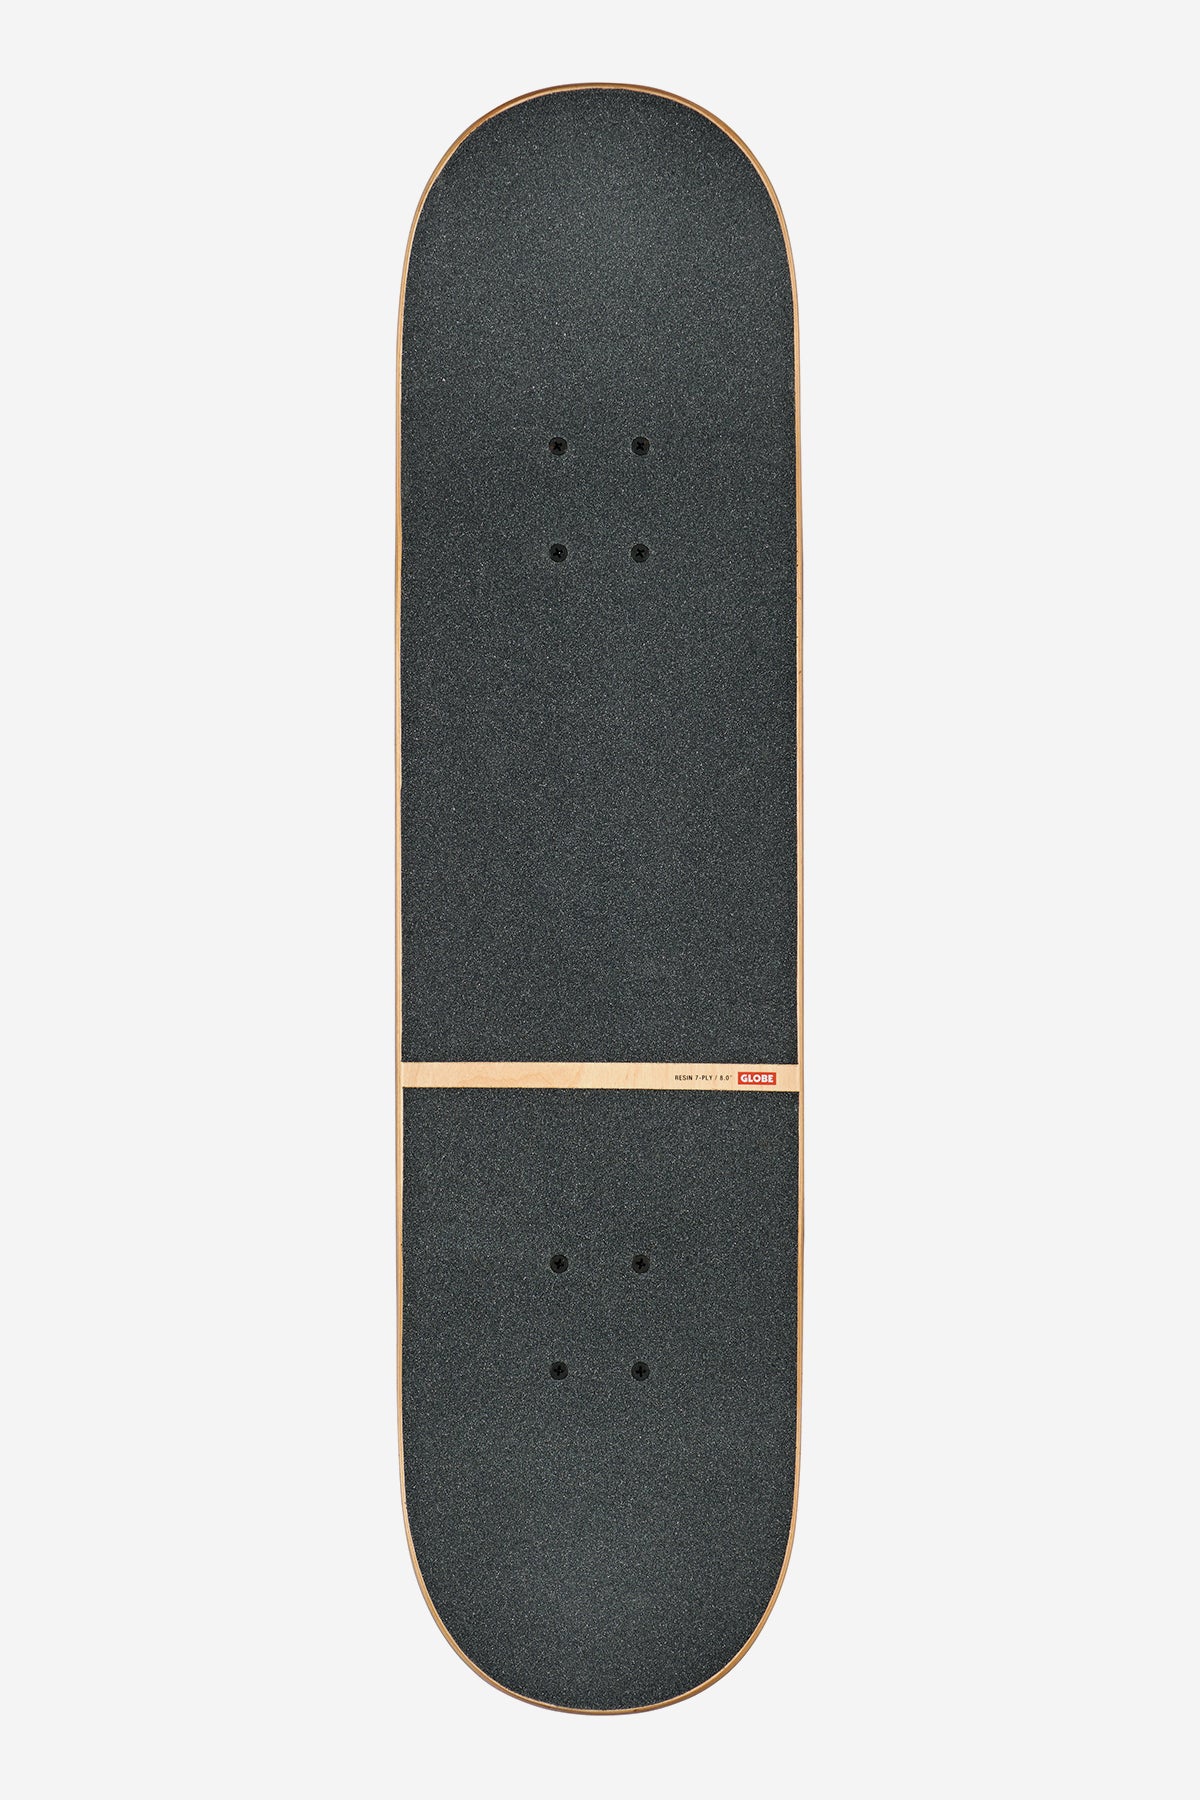 g1 stack réfracté 8.0" complet skateboard